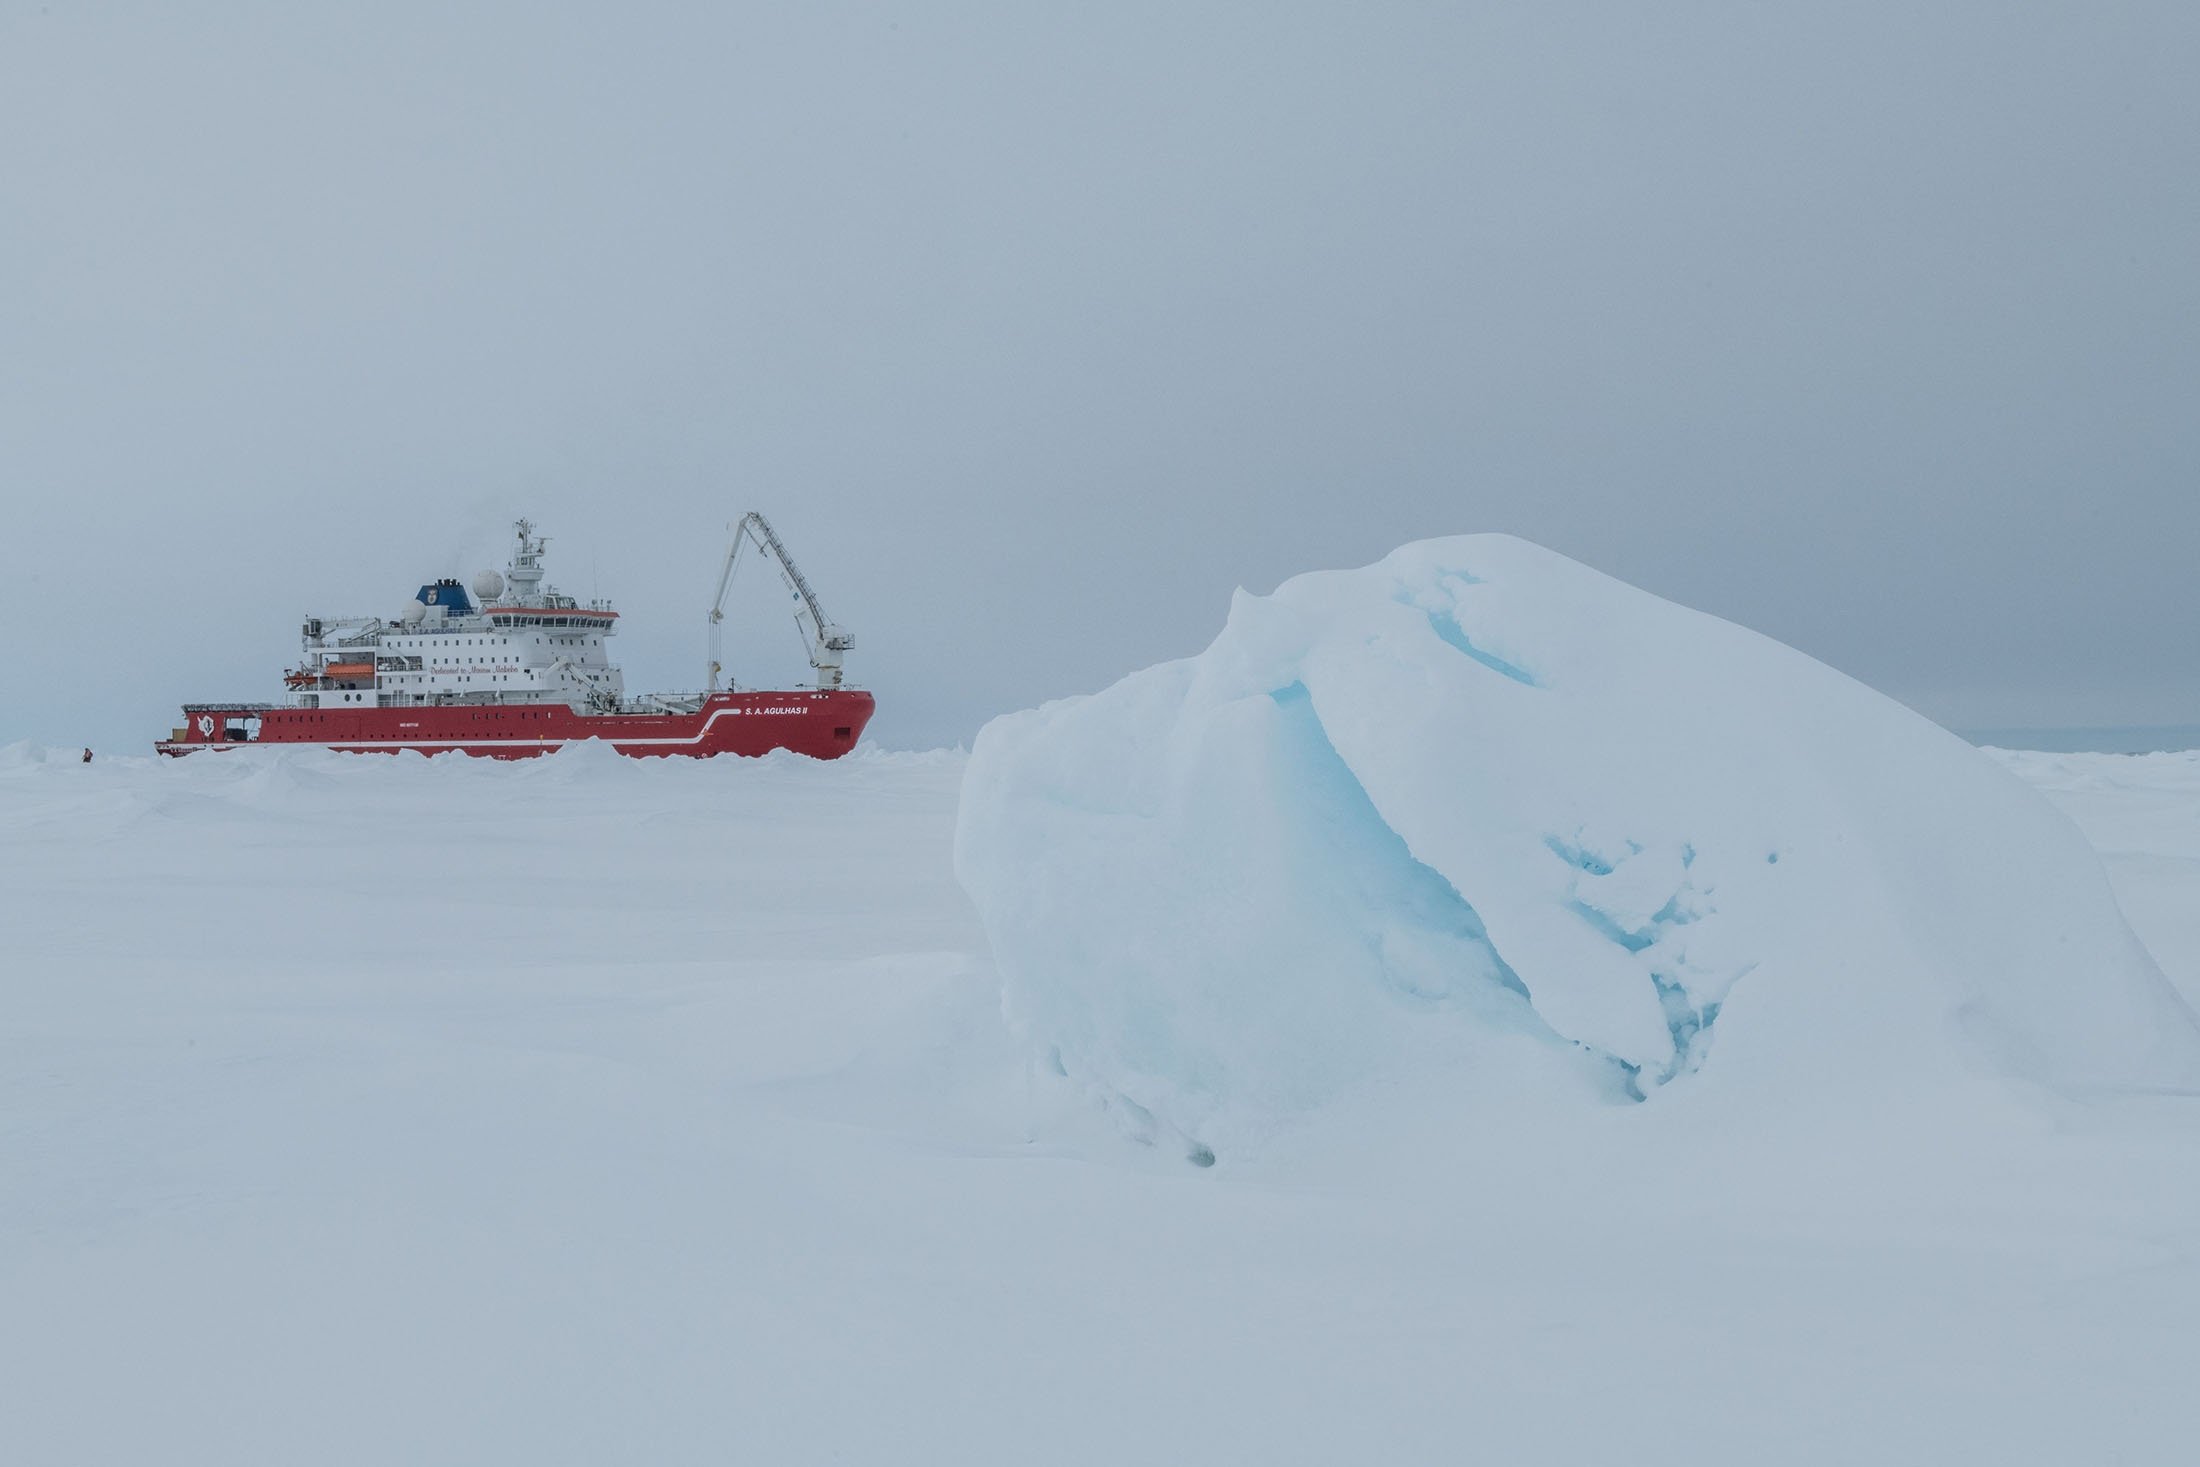 SA Agulhas II merapat di es laut selama operasi AUV ekspedisi Endurance22 mencari kapal Sir Ernest Shackleton Endurance di Laut Weddell, Antartika, 23 Februari 2022. (Falklands Maritime Heritage Trust via AFP)